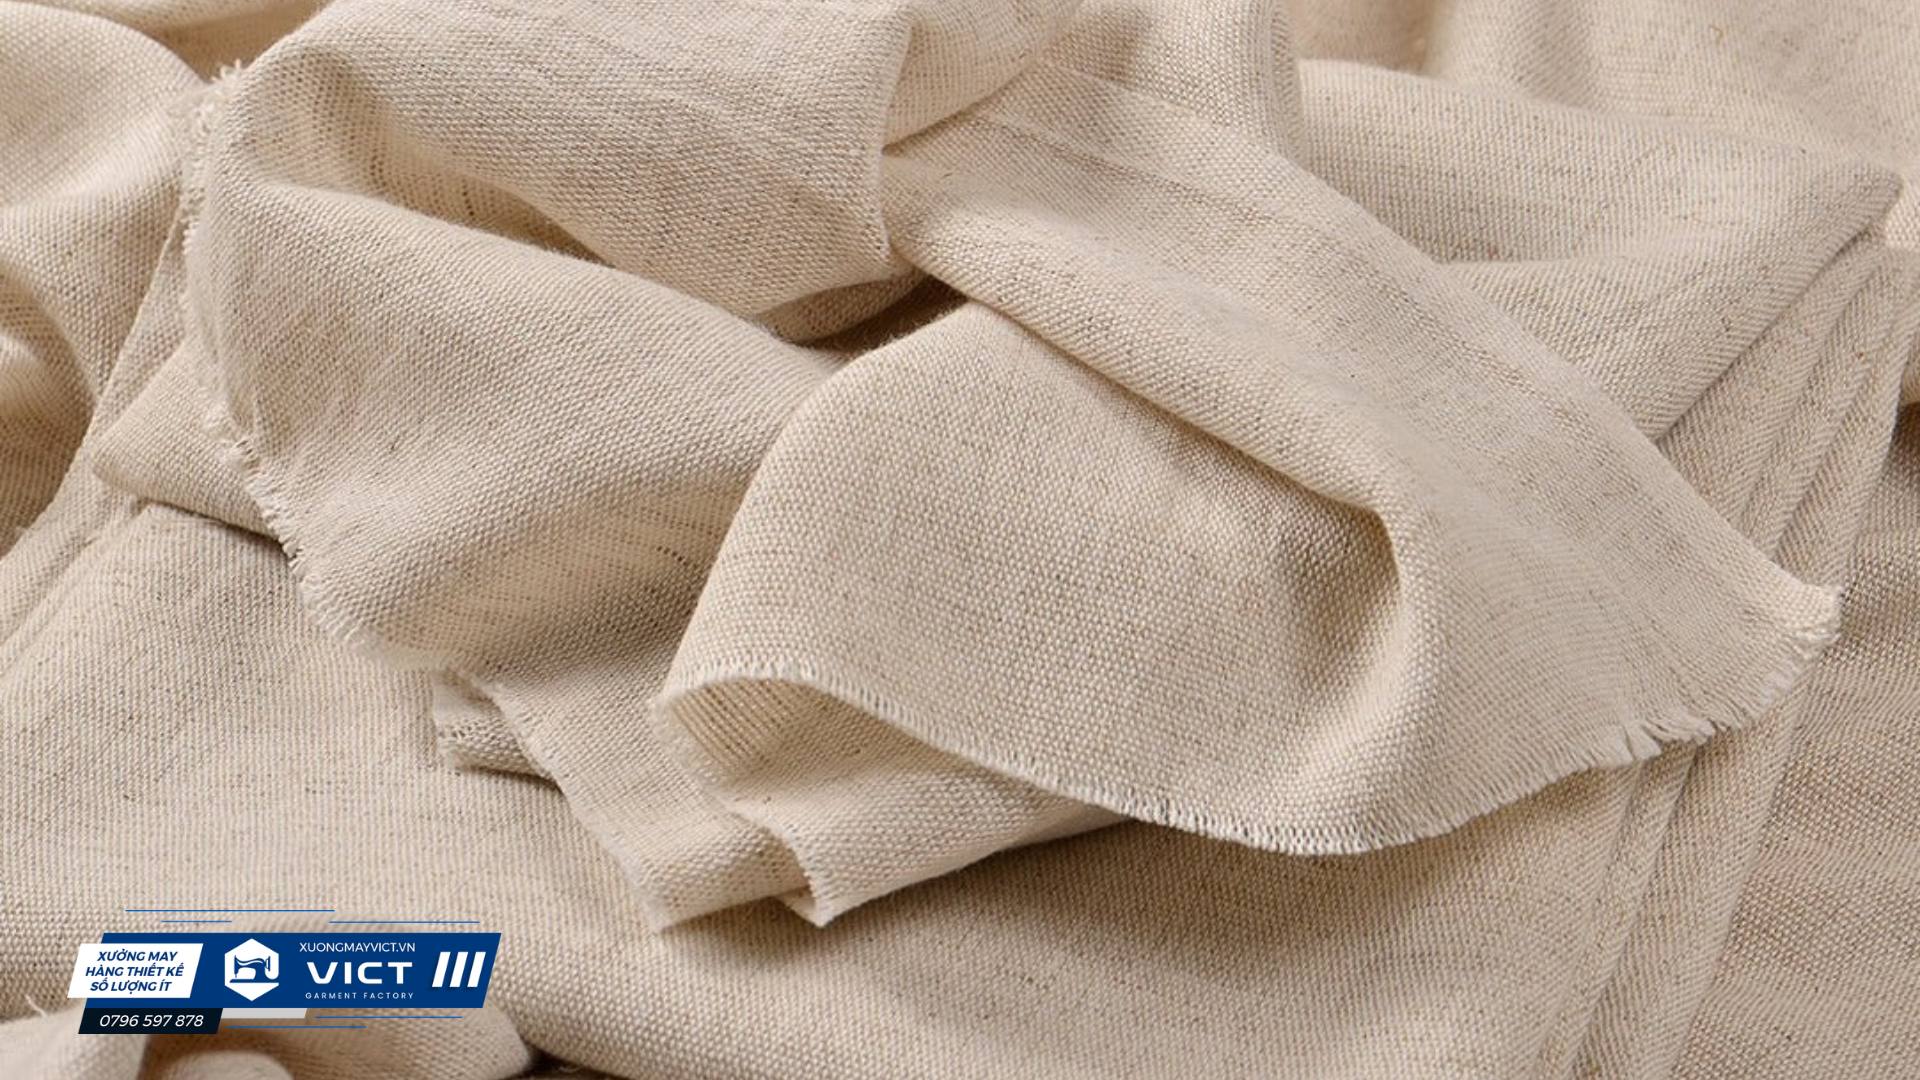 Vải linen dễ bị co rút và nhăn nát khi sấy bằng máy sấy do đó không nên sử dụng máy sấy để làm khô vải linen